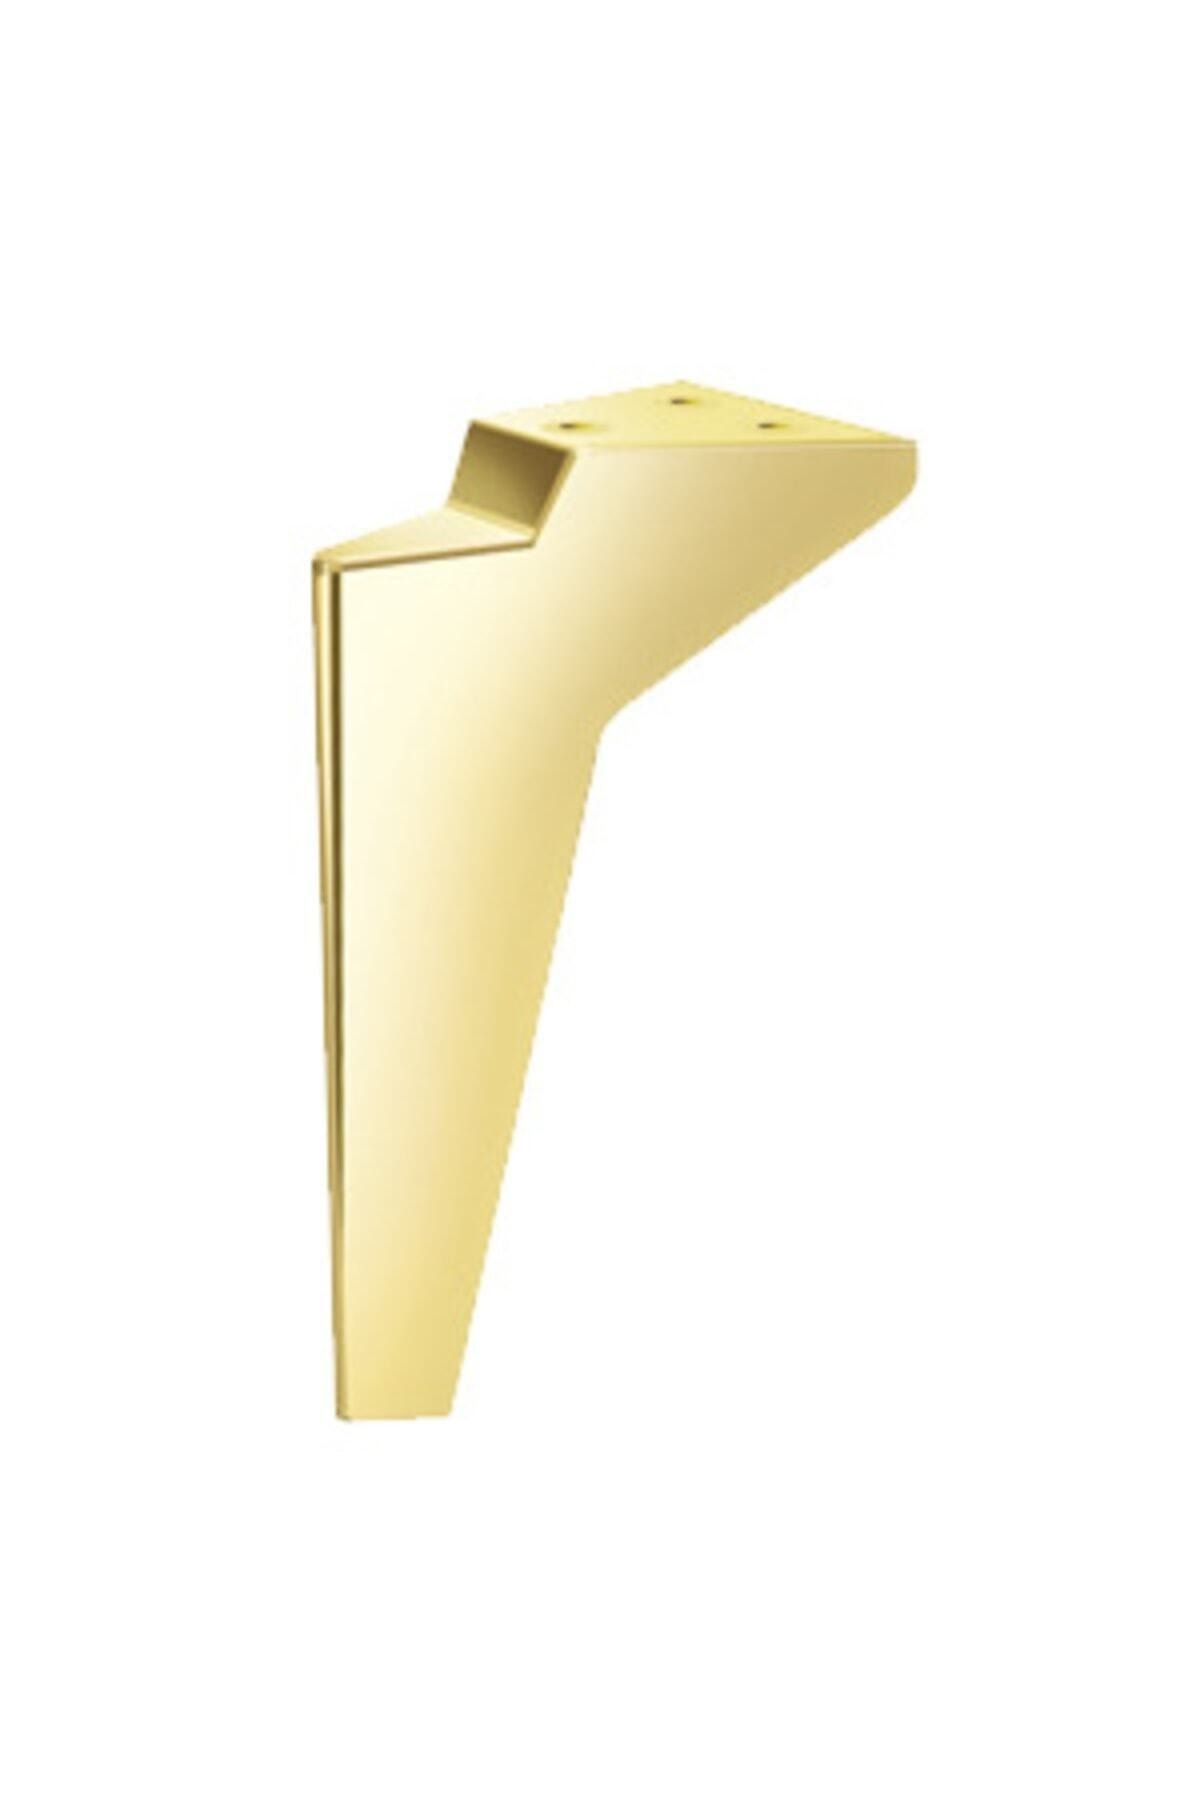 Genel Markalar Platin Ayak Plastik Altın Renk 19cm Ölçü Kanepe Ayak Koltuk Ayağı Ünite Ayağı Mobilya Ayak